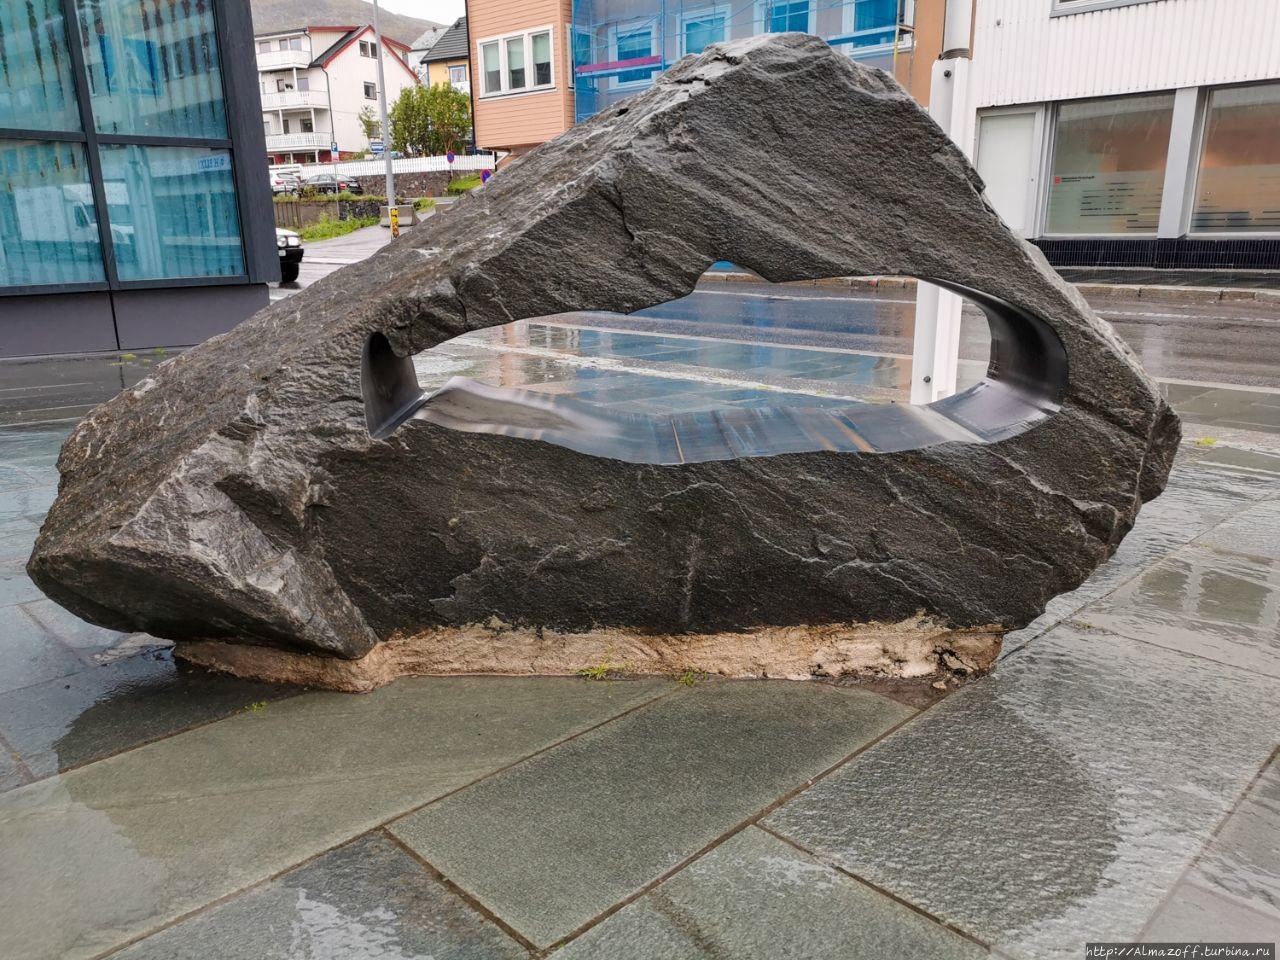 Монумент «Геодезическая дуга Струве» Хаммерфест, Норвегия